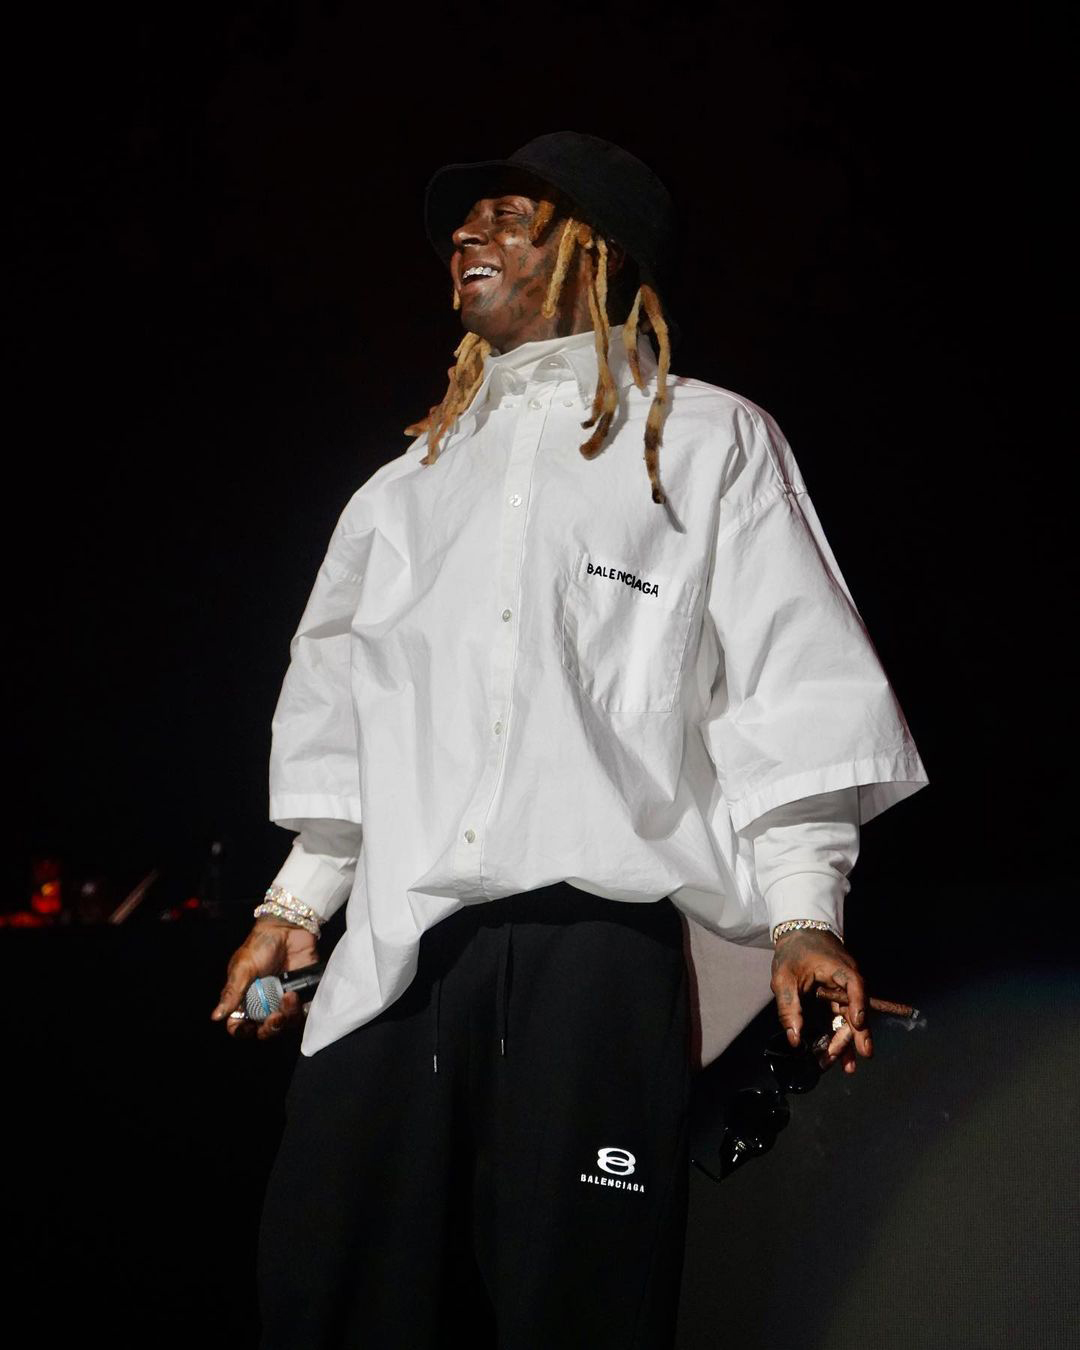 Lil Wayne Performs Live At 97.9 WJLB Big Show In Michigan